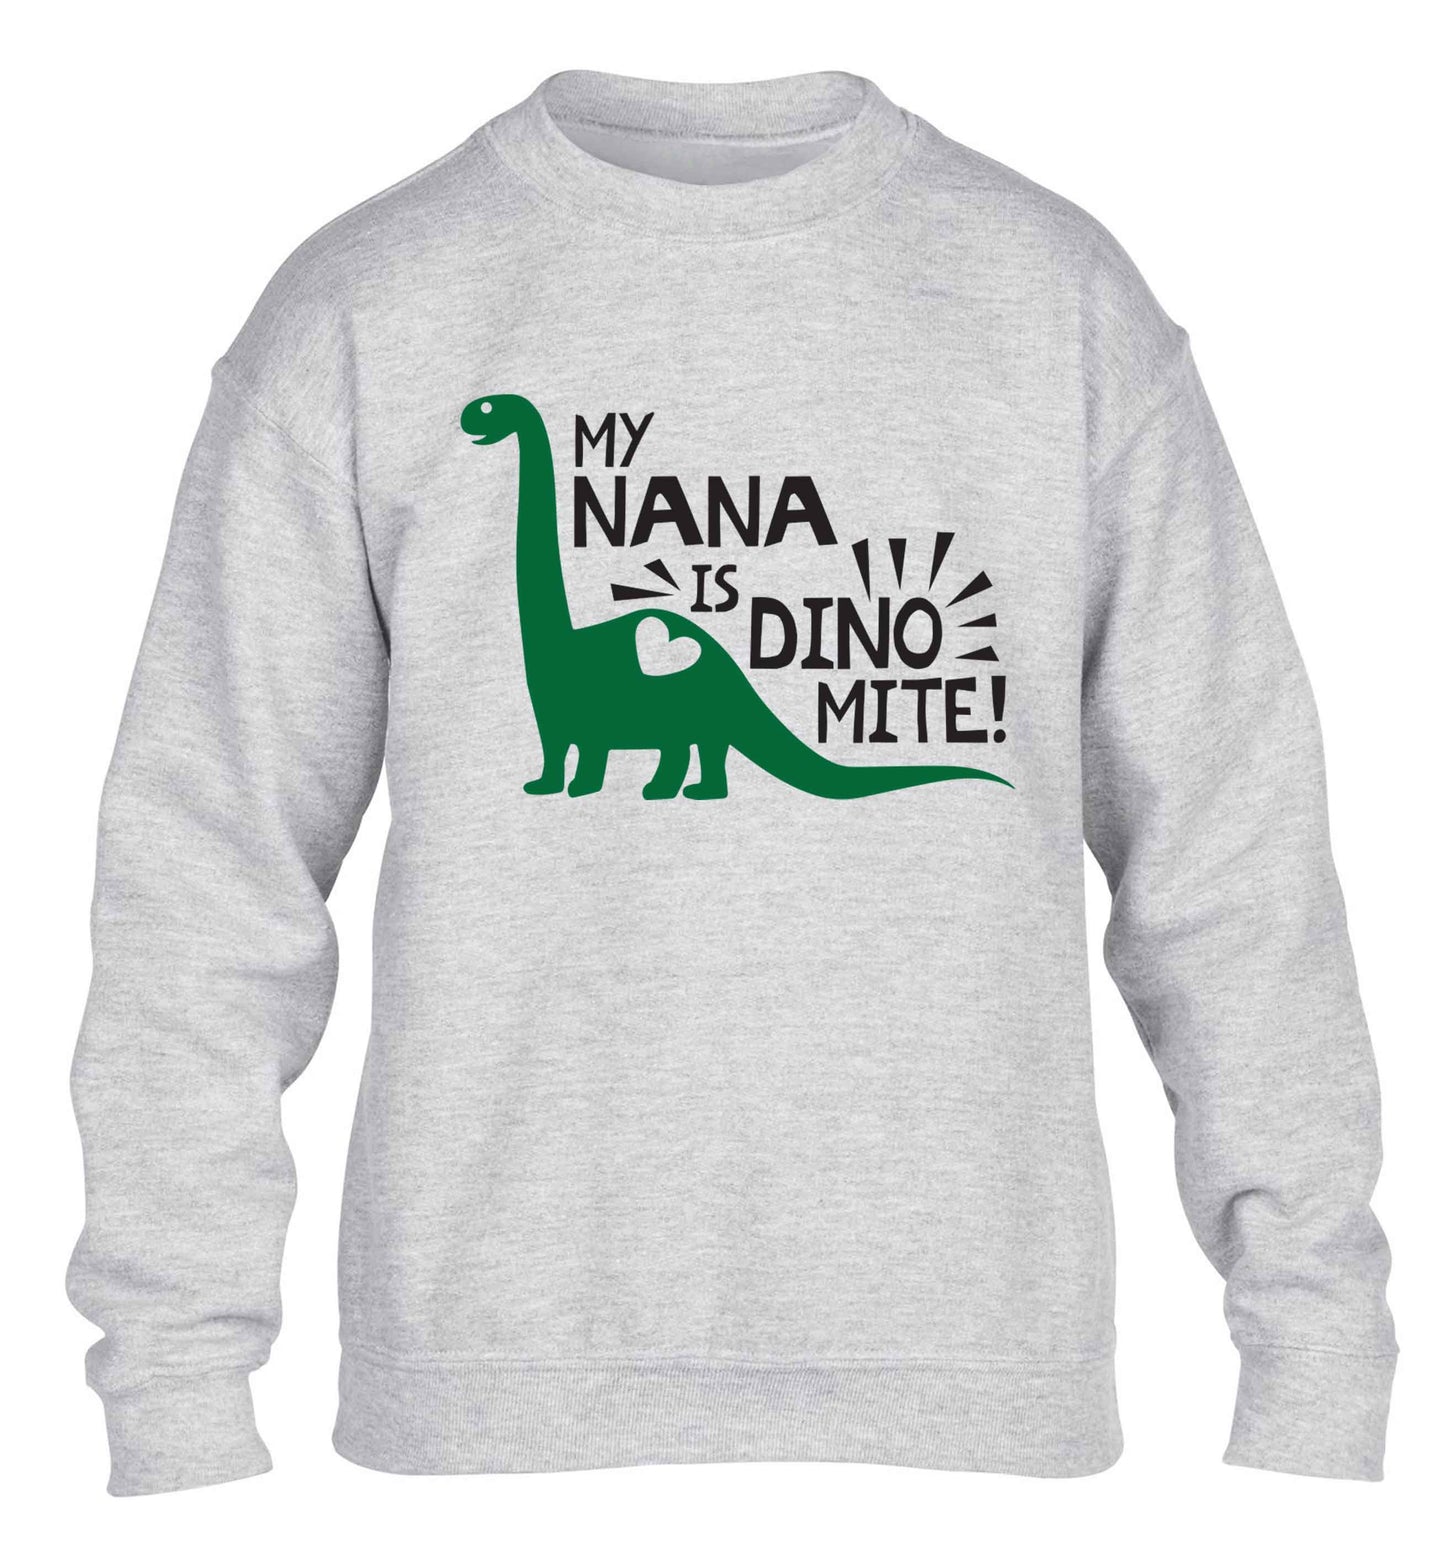 My nana is dinomite! children's grey sweater 12-13 Years